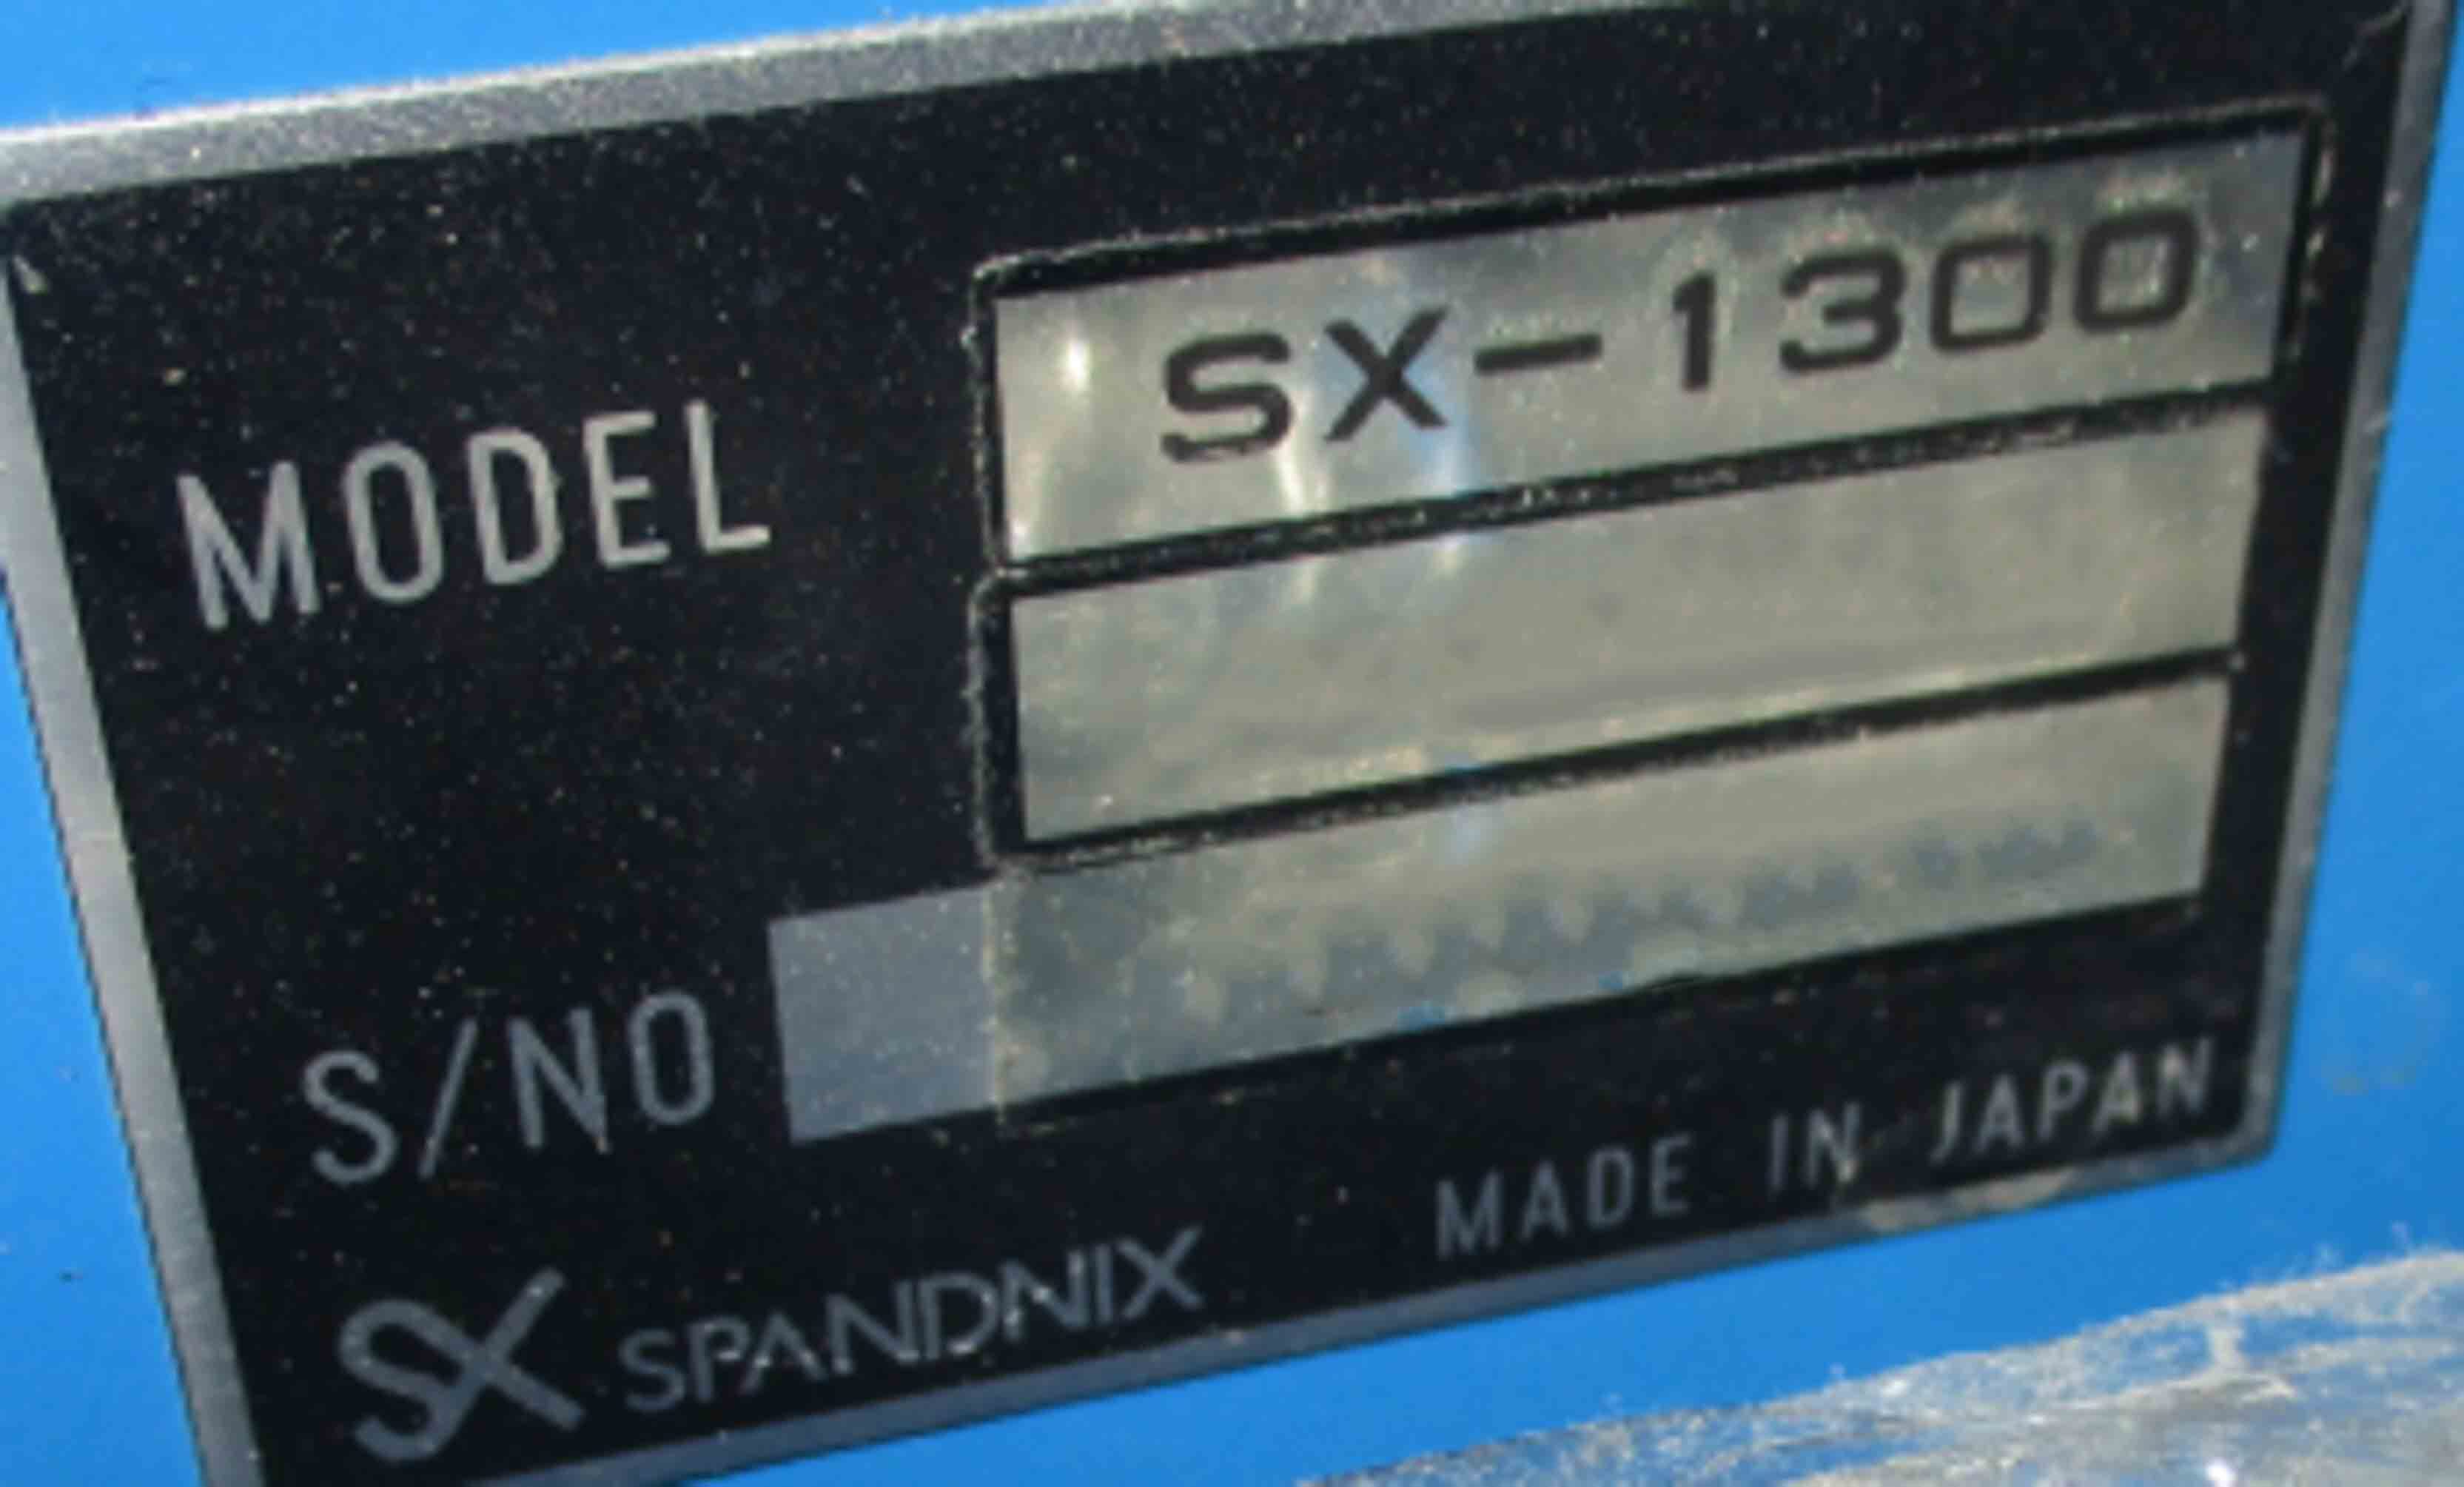 圖為 已使用的 SPANDNIX SX-1300 待售